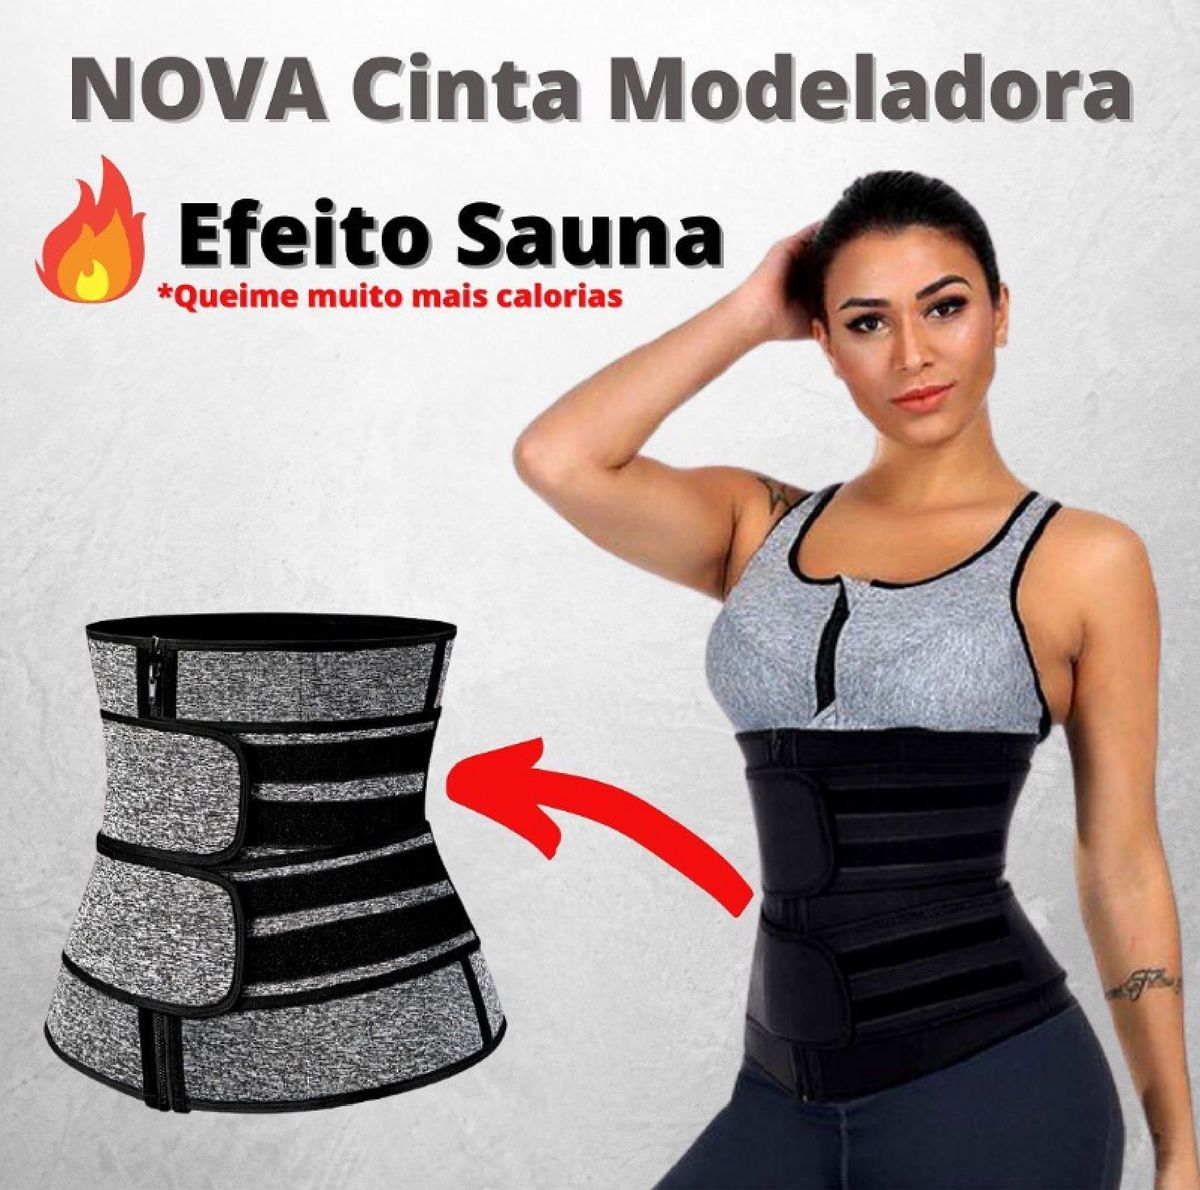 Cinta Modeladora Efeito Sauna - Slim Fitwear + Ganhe E-book Guia para